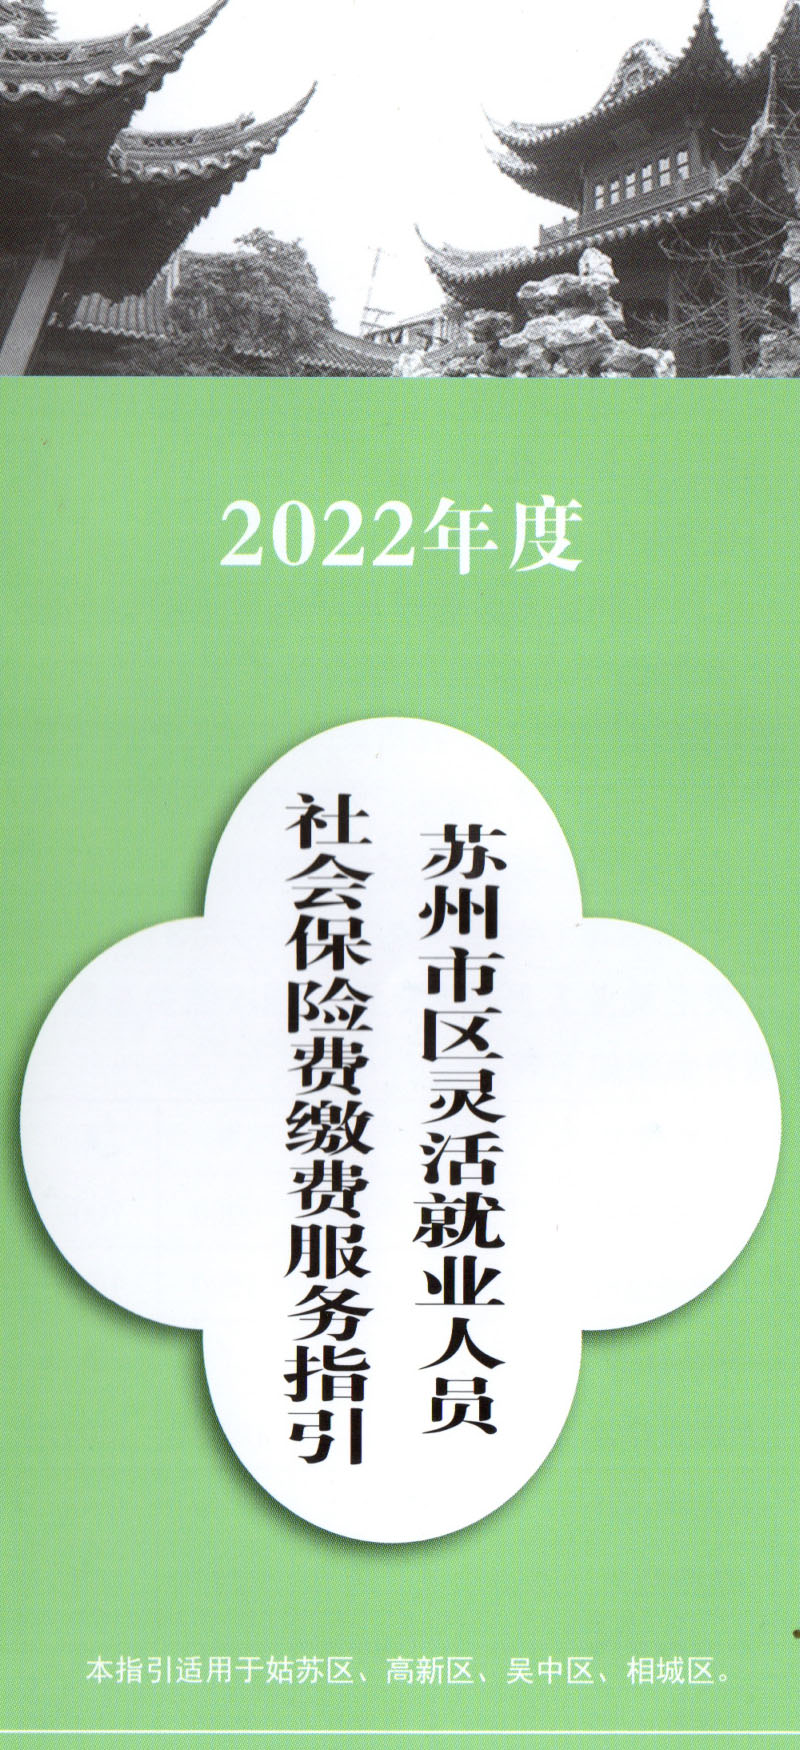 2022苏州灵活就业1.jpg